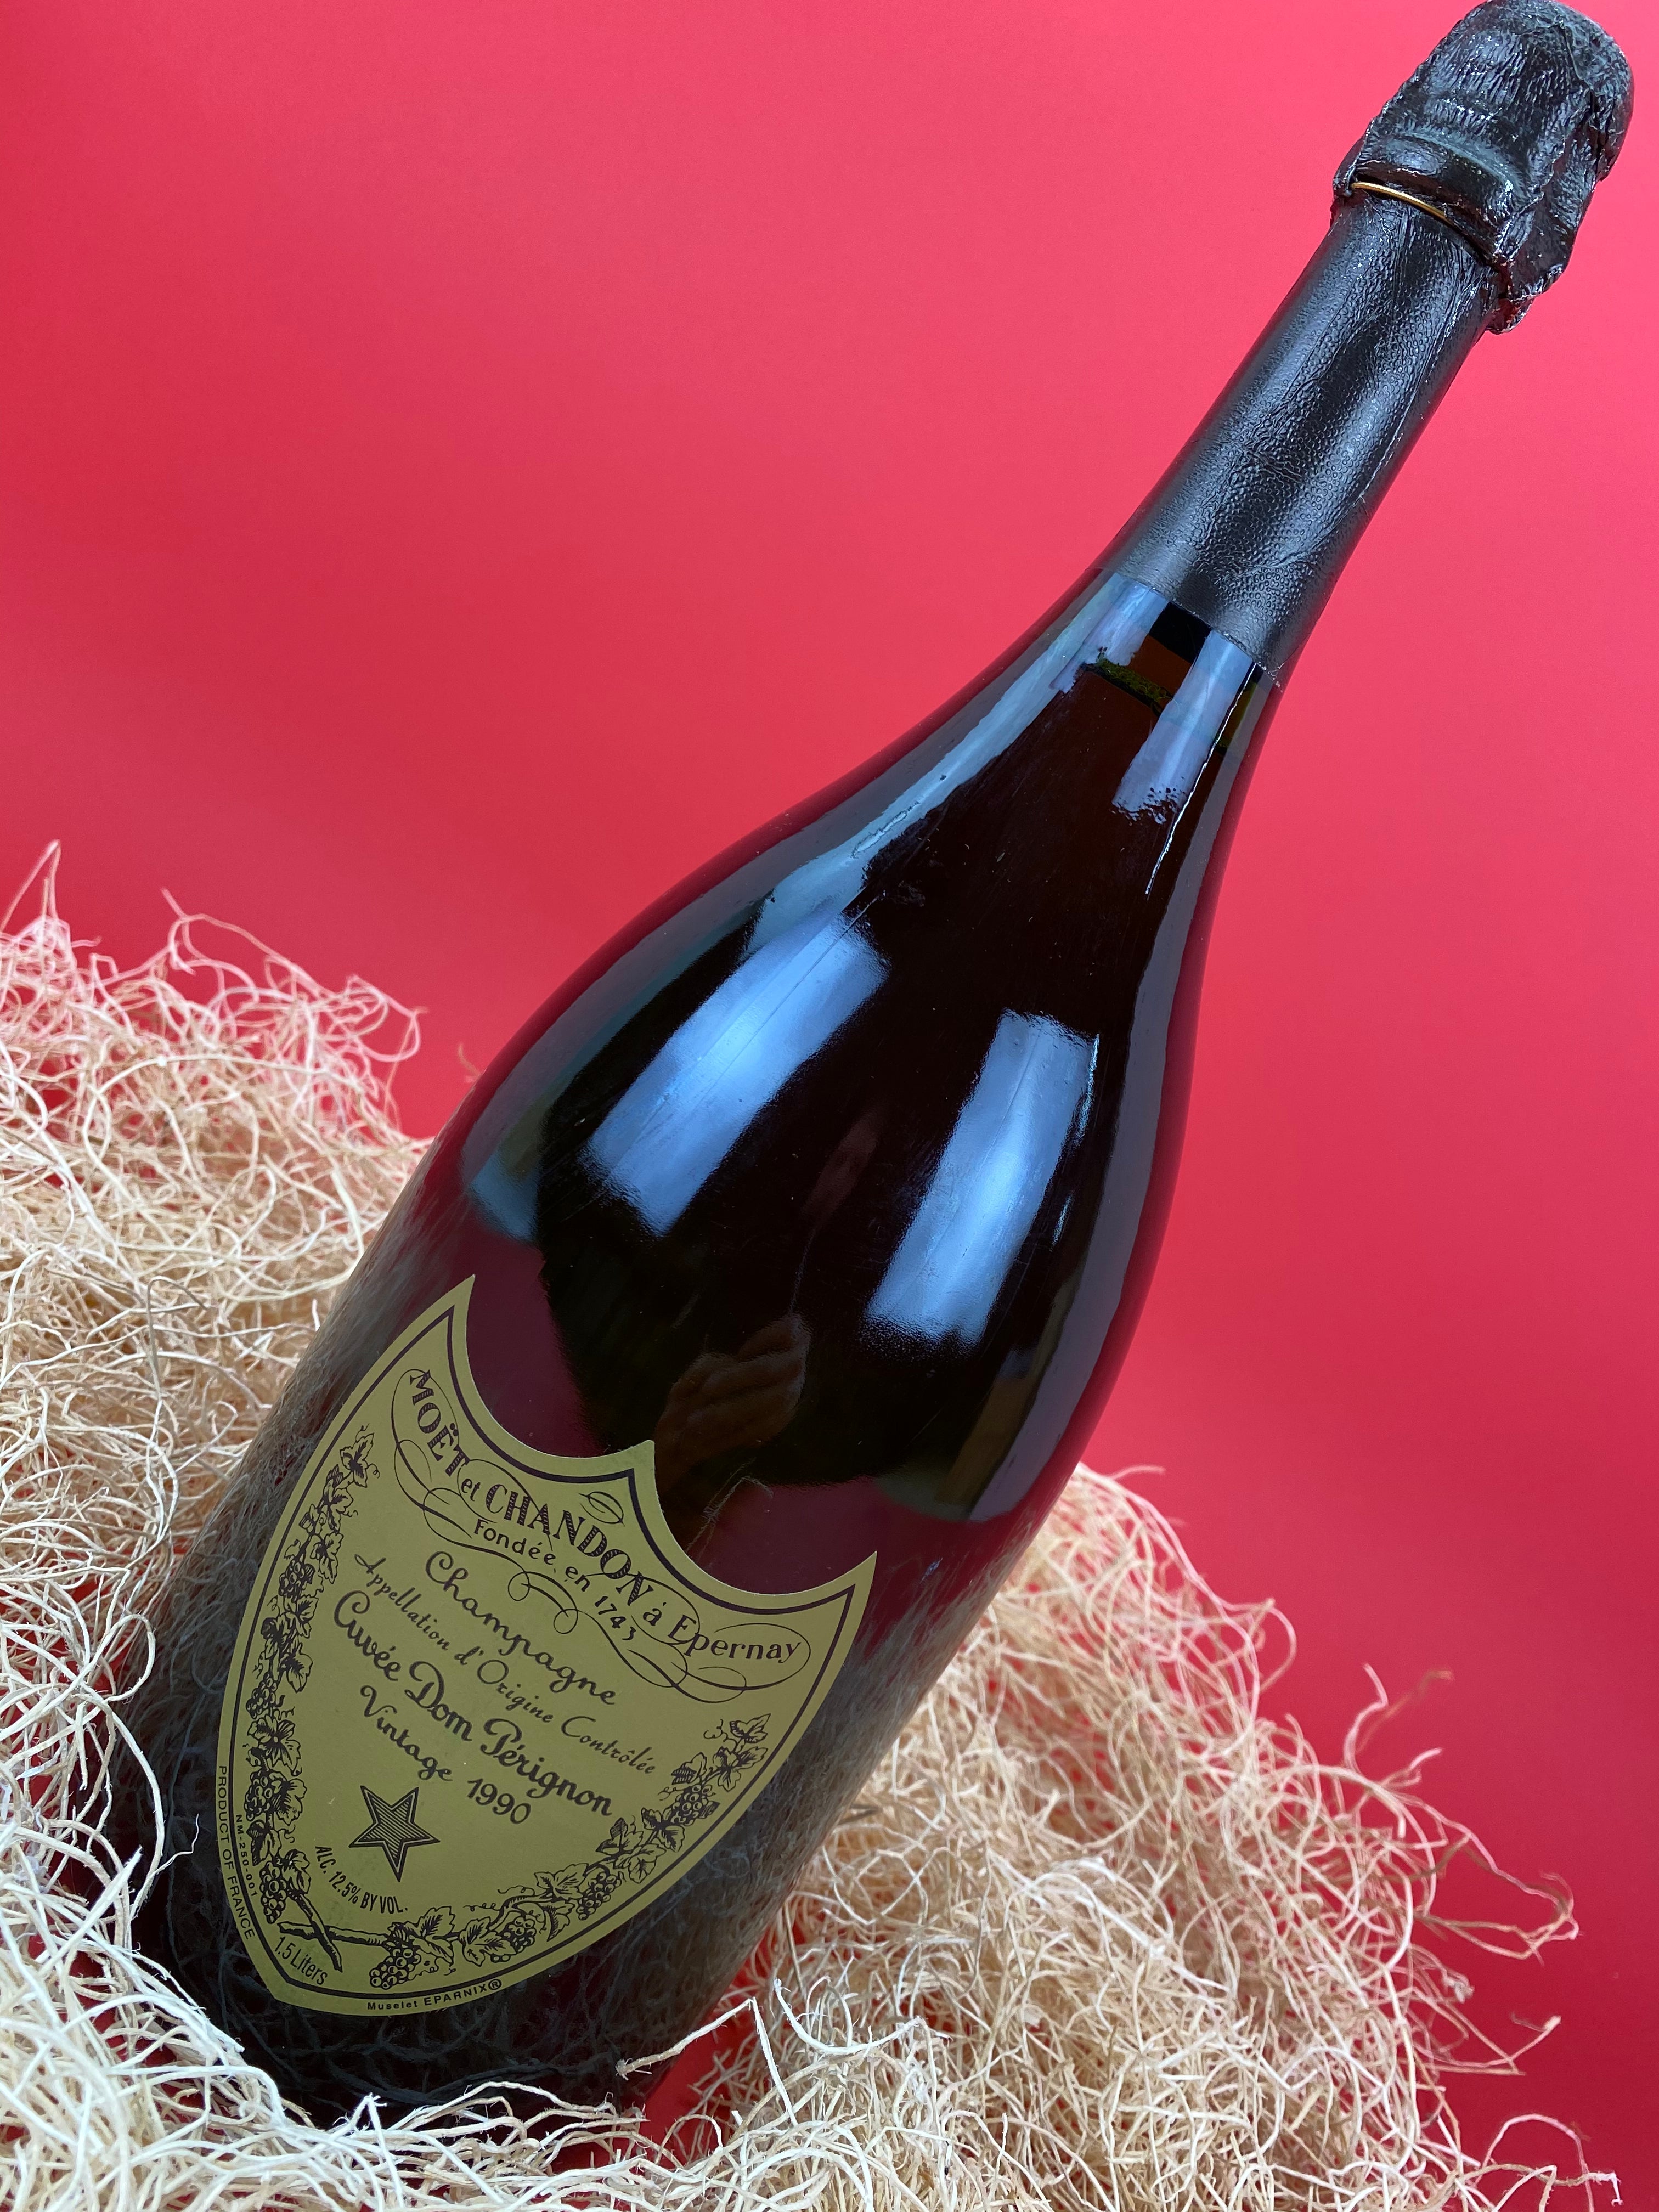 Champagne Moet & Chandon, Brut Imperial Rose, 1500 ml Moet